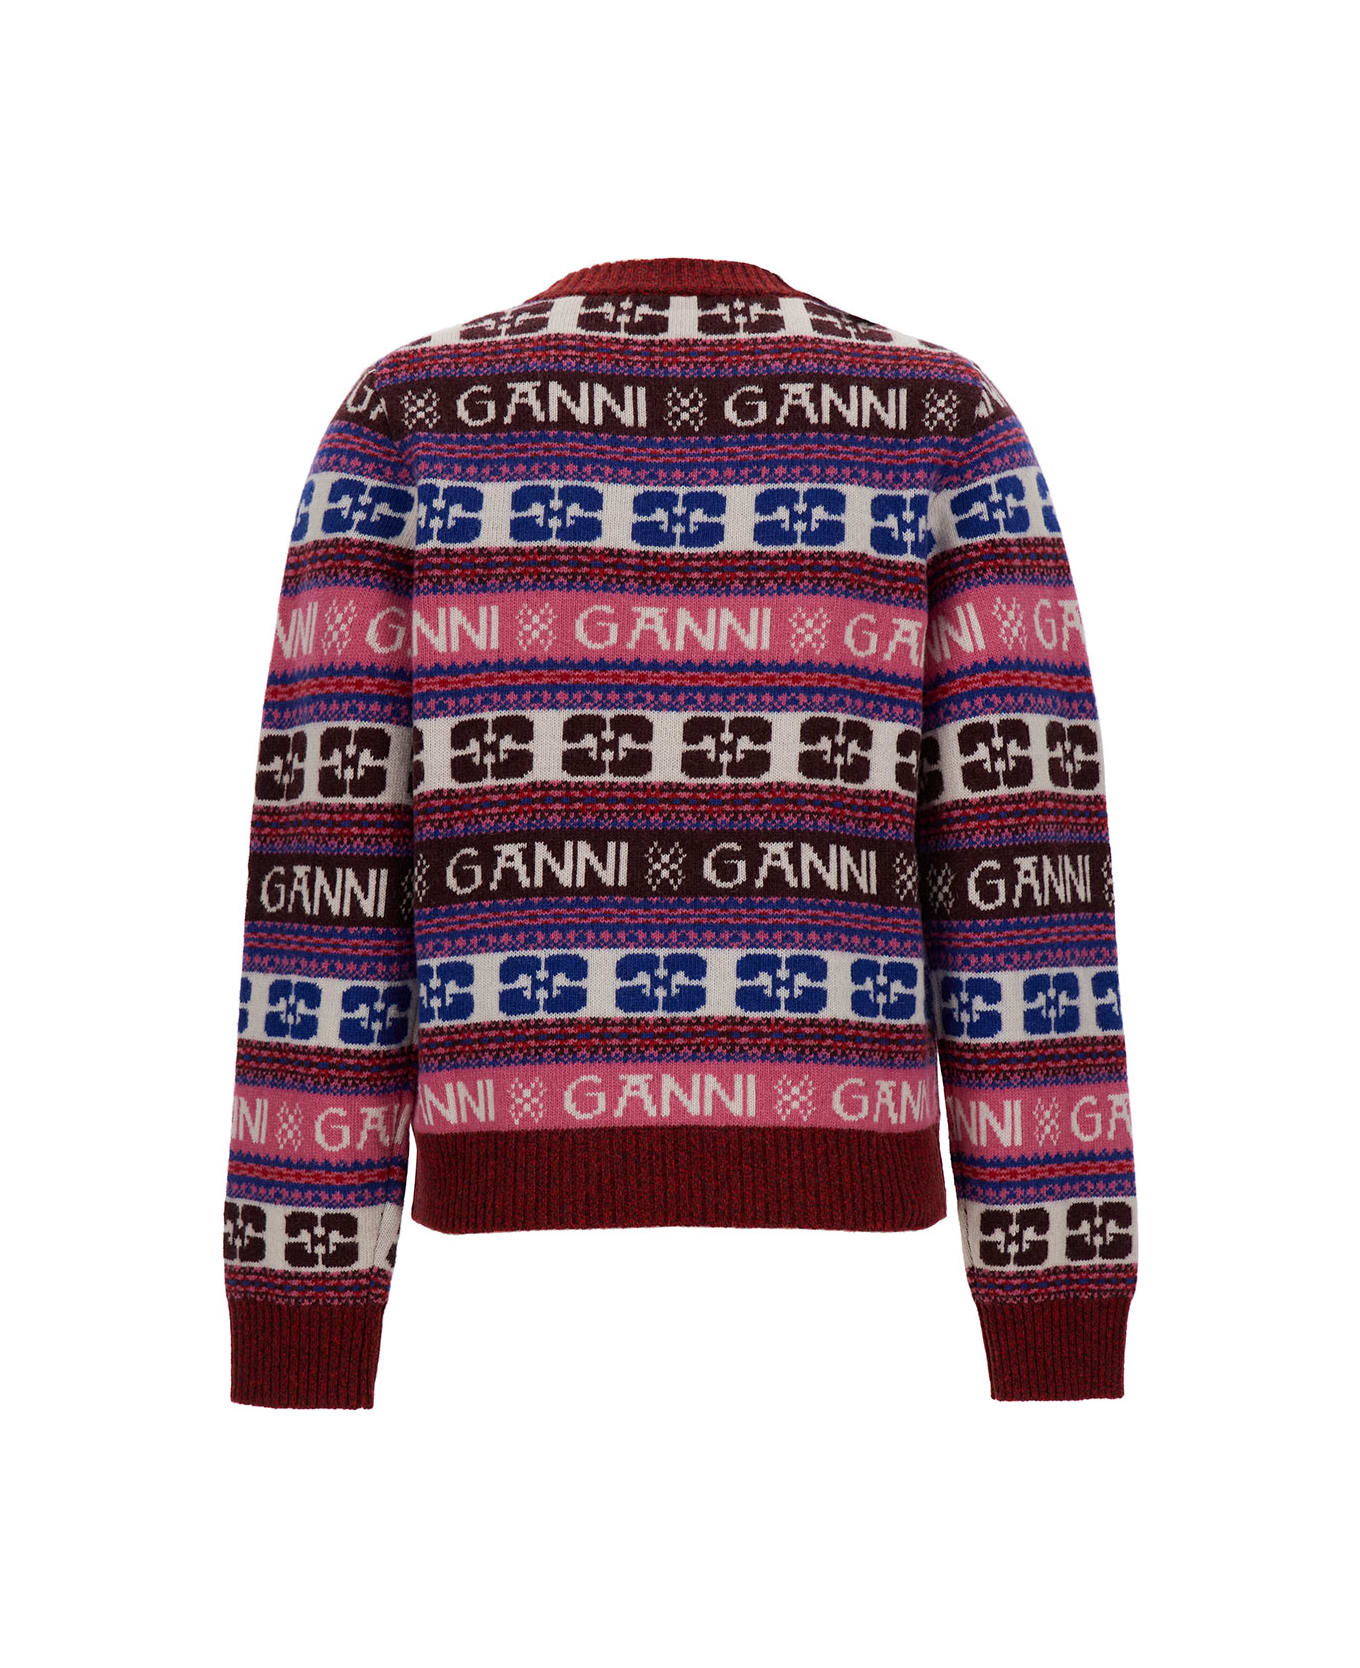 Ganni Multicolor Wool Knitwear - Multicolor